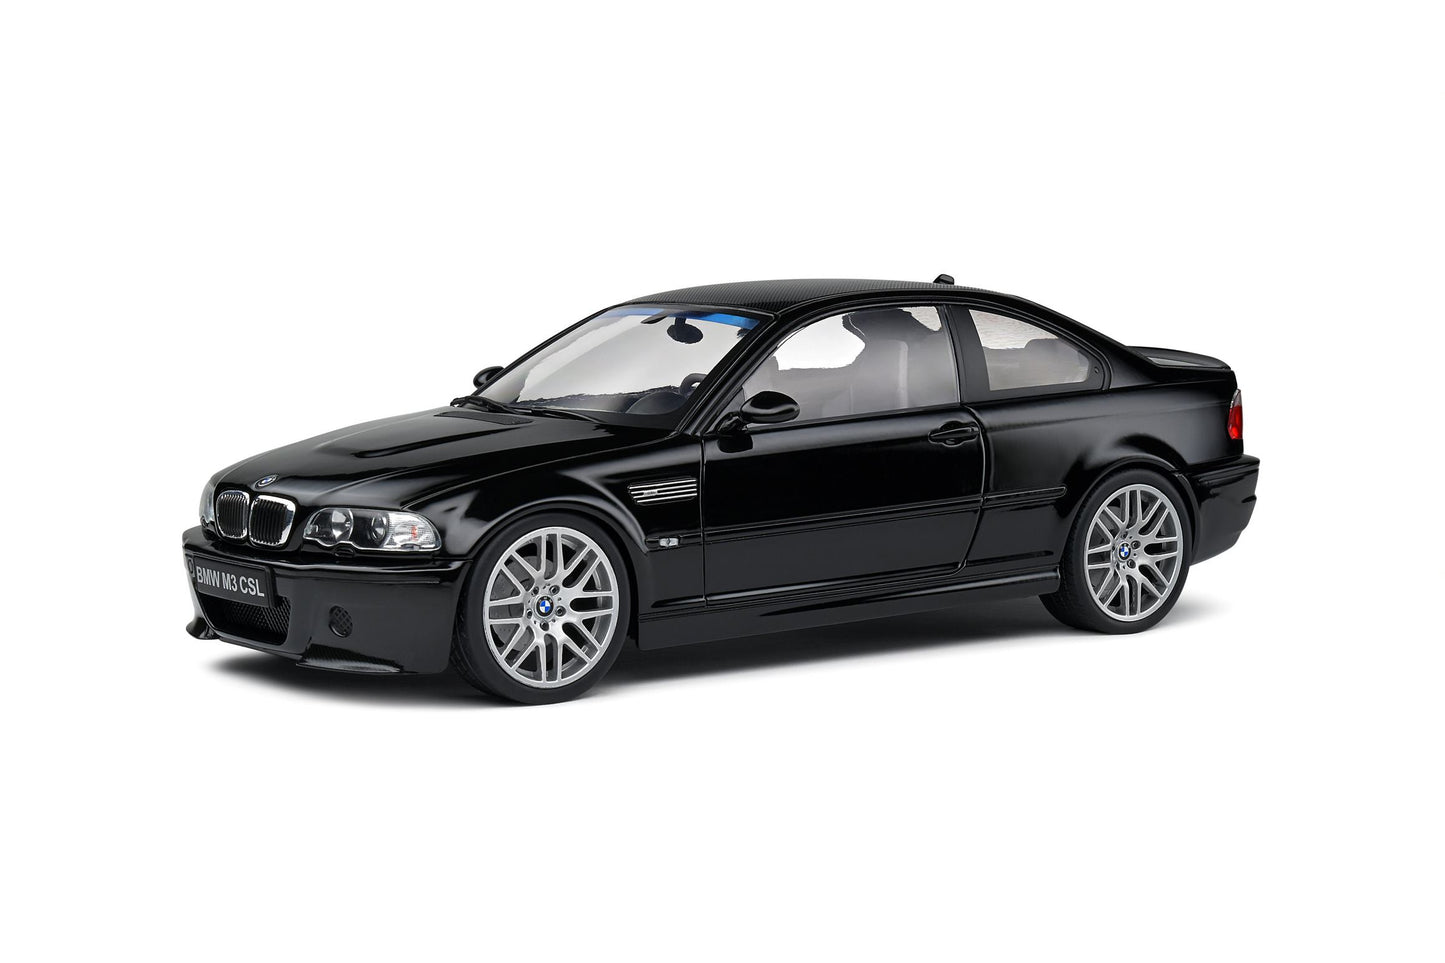 1:18 BMW E46 CSL, 2003, sort, Solido 1806506, delvis åben model